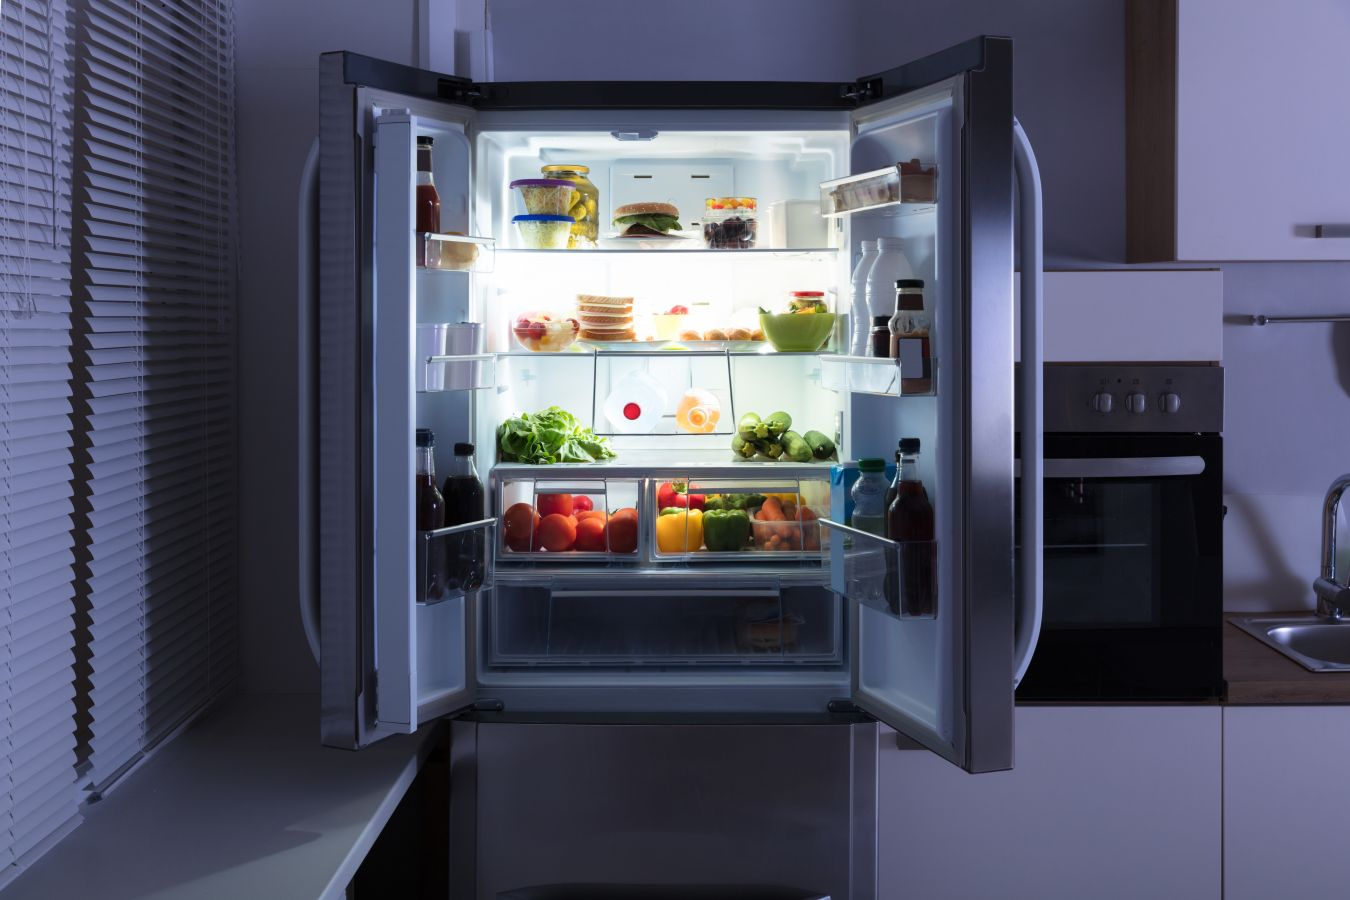 Врач назвал 4 продукта, которые становятся токсичными при хранении в холодильнике